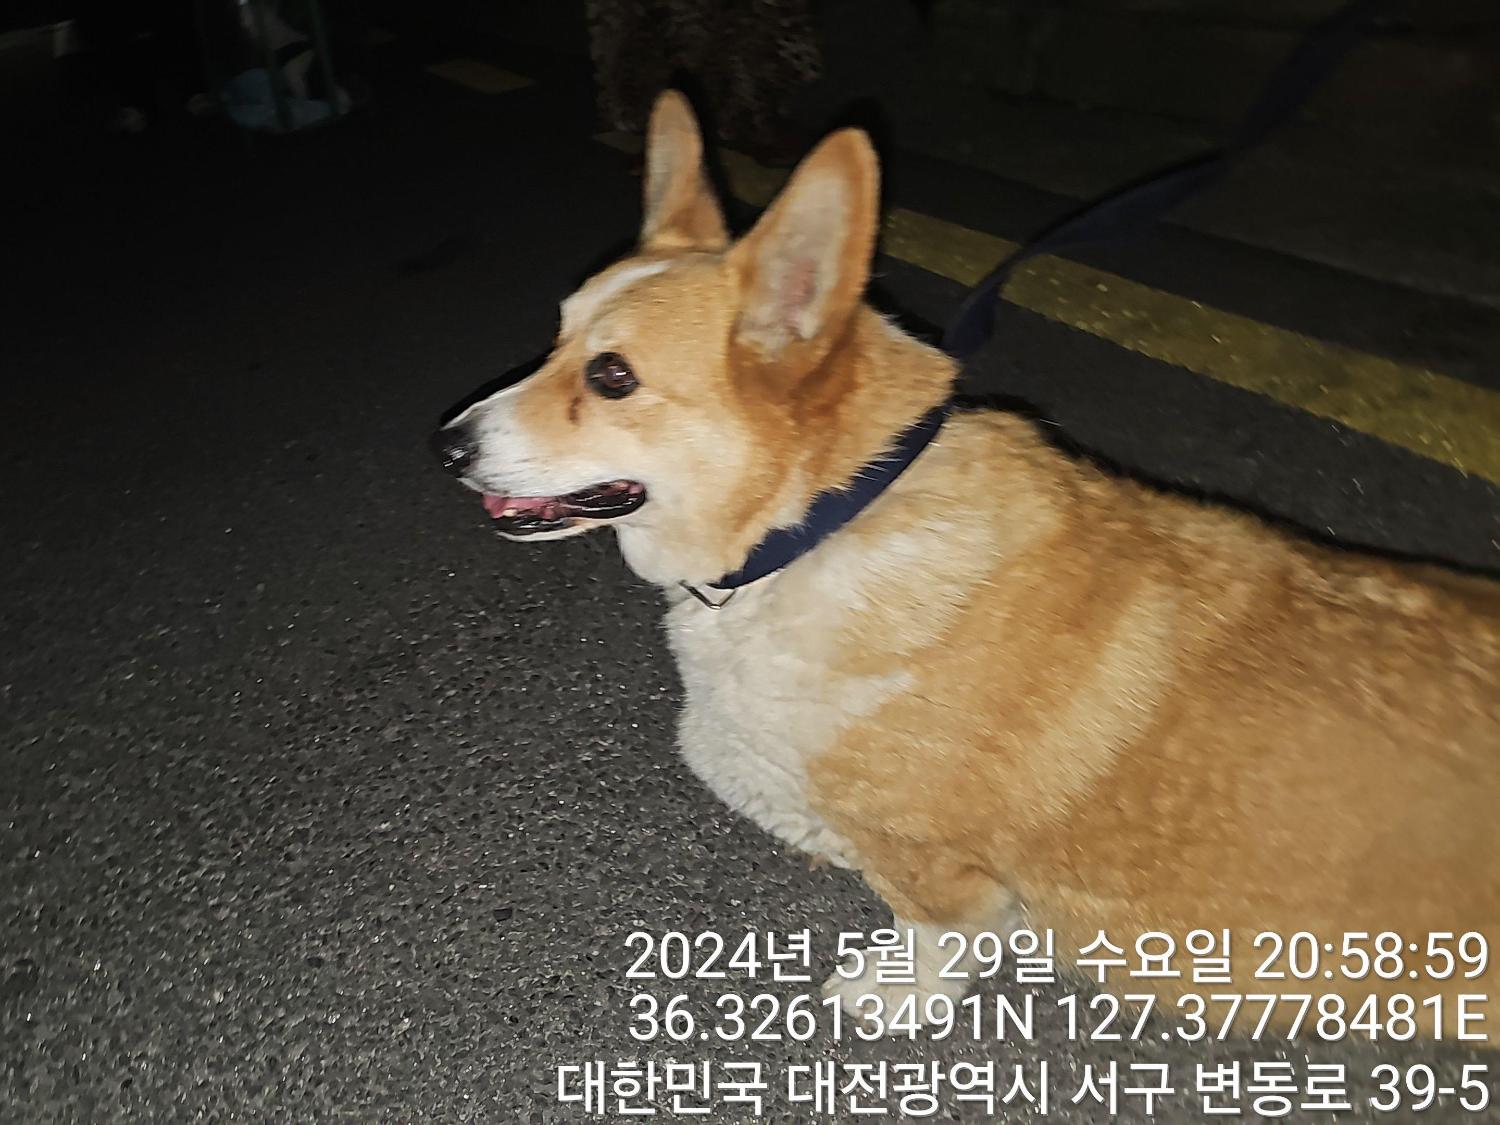 공고 번호가 대전-서구-2024-00157인 웰시 코기 카디건 동물 사진  